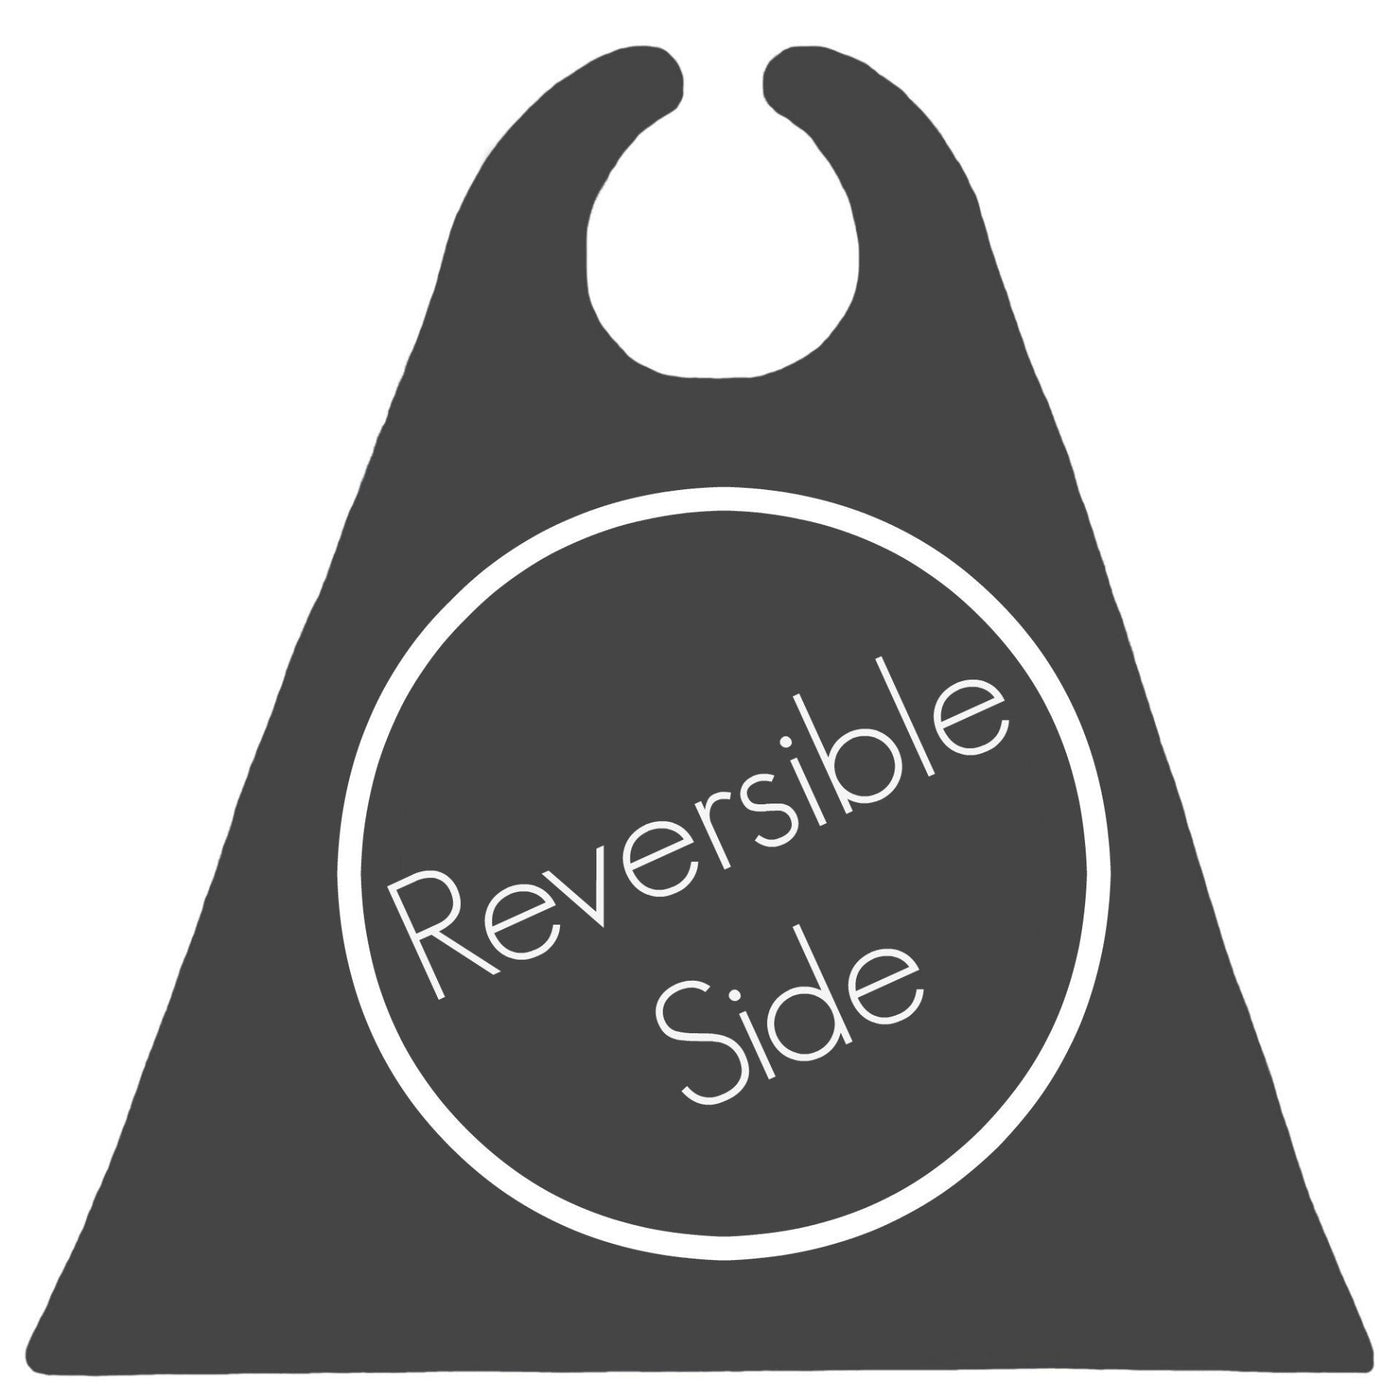 Reversible Side- Design 2